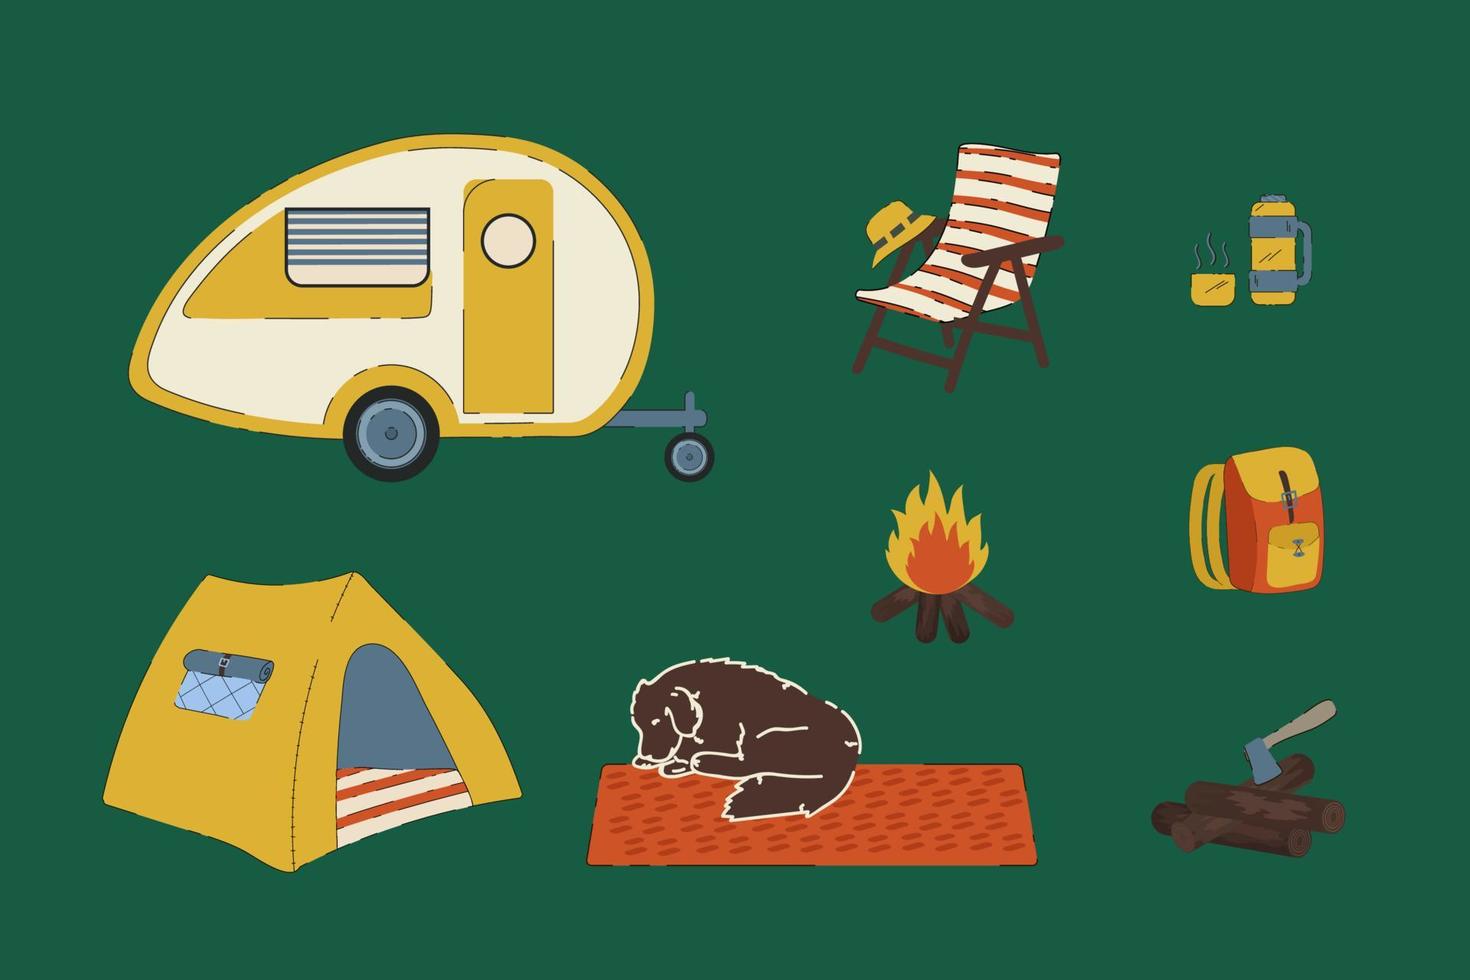 kit pour camping-car rv et vie en foret. ensemble de camping illustrations d'un feu de camp, d'un chien, de bois de chauffage, d'un thermos, d'un sac à dos de touriste. une remorque mobile, une tente, une chaise et un chapeau panama. vecteur